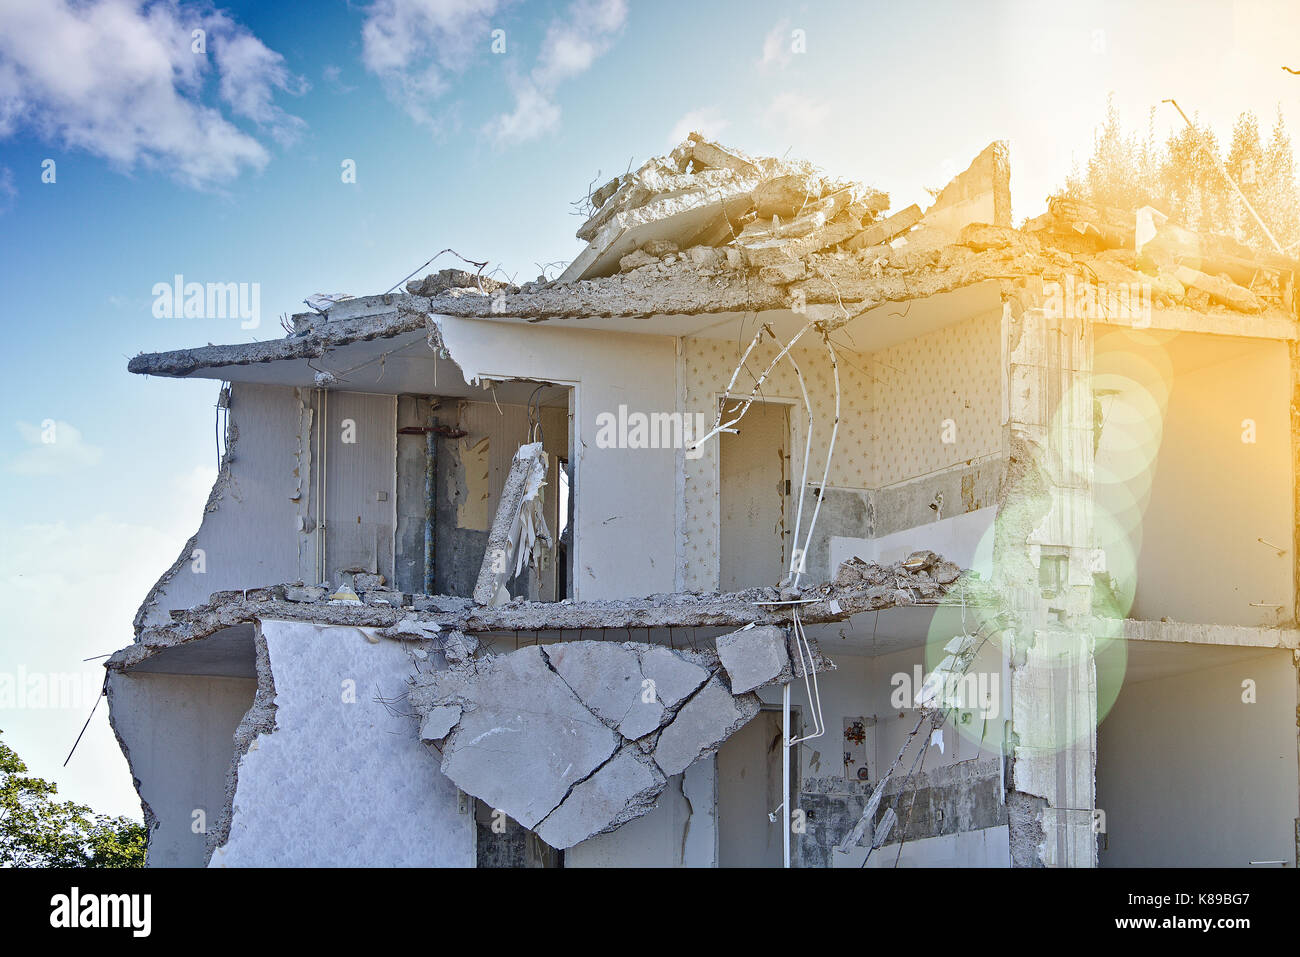 La rovina di un parzialmente demolito palazzo residenziale (piano superiore) davanti a un cielo blu con nuvole bianche, soleggiato con lens flare Foto Stock